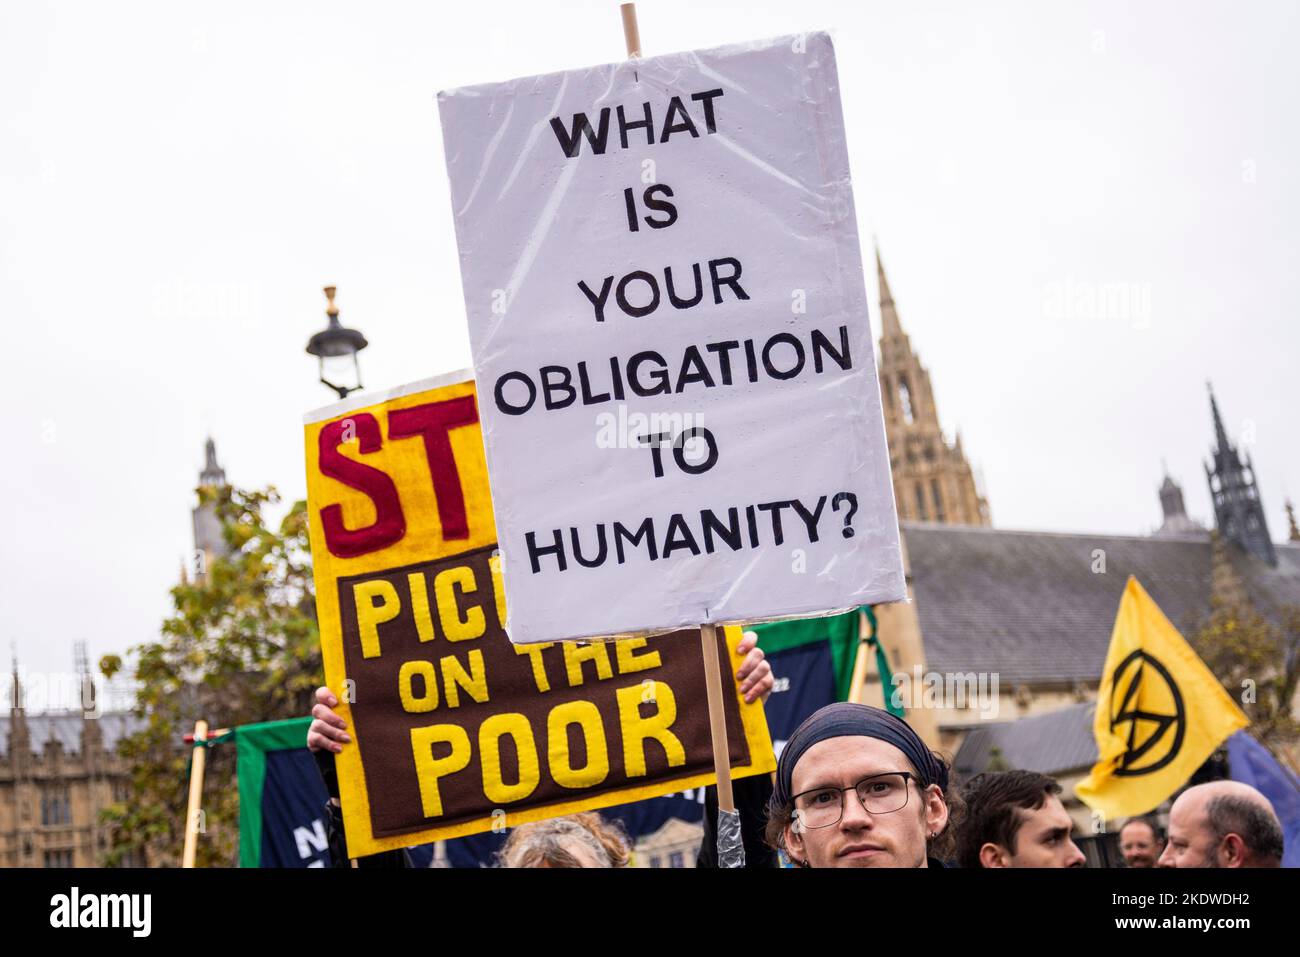 A Londra si è fatto un cartello per protestare contro le misure di austerità del governo Tory, che chiedono elezioni generali e salari più alti. Obbligo per l'umanità Foto Stock